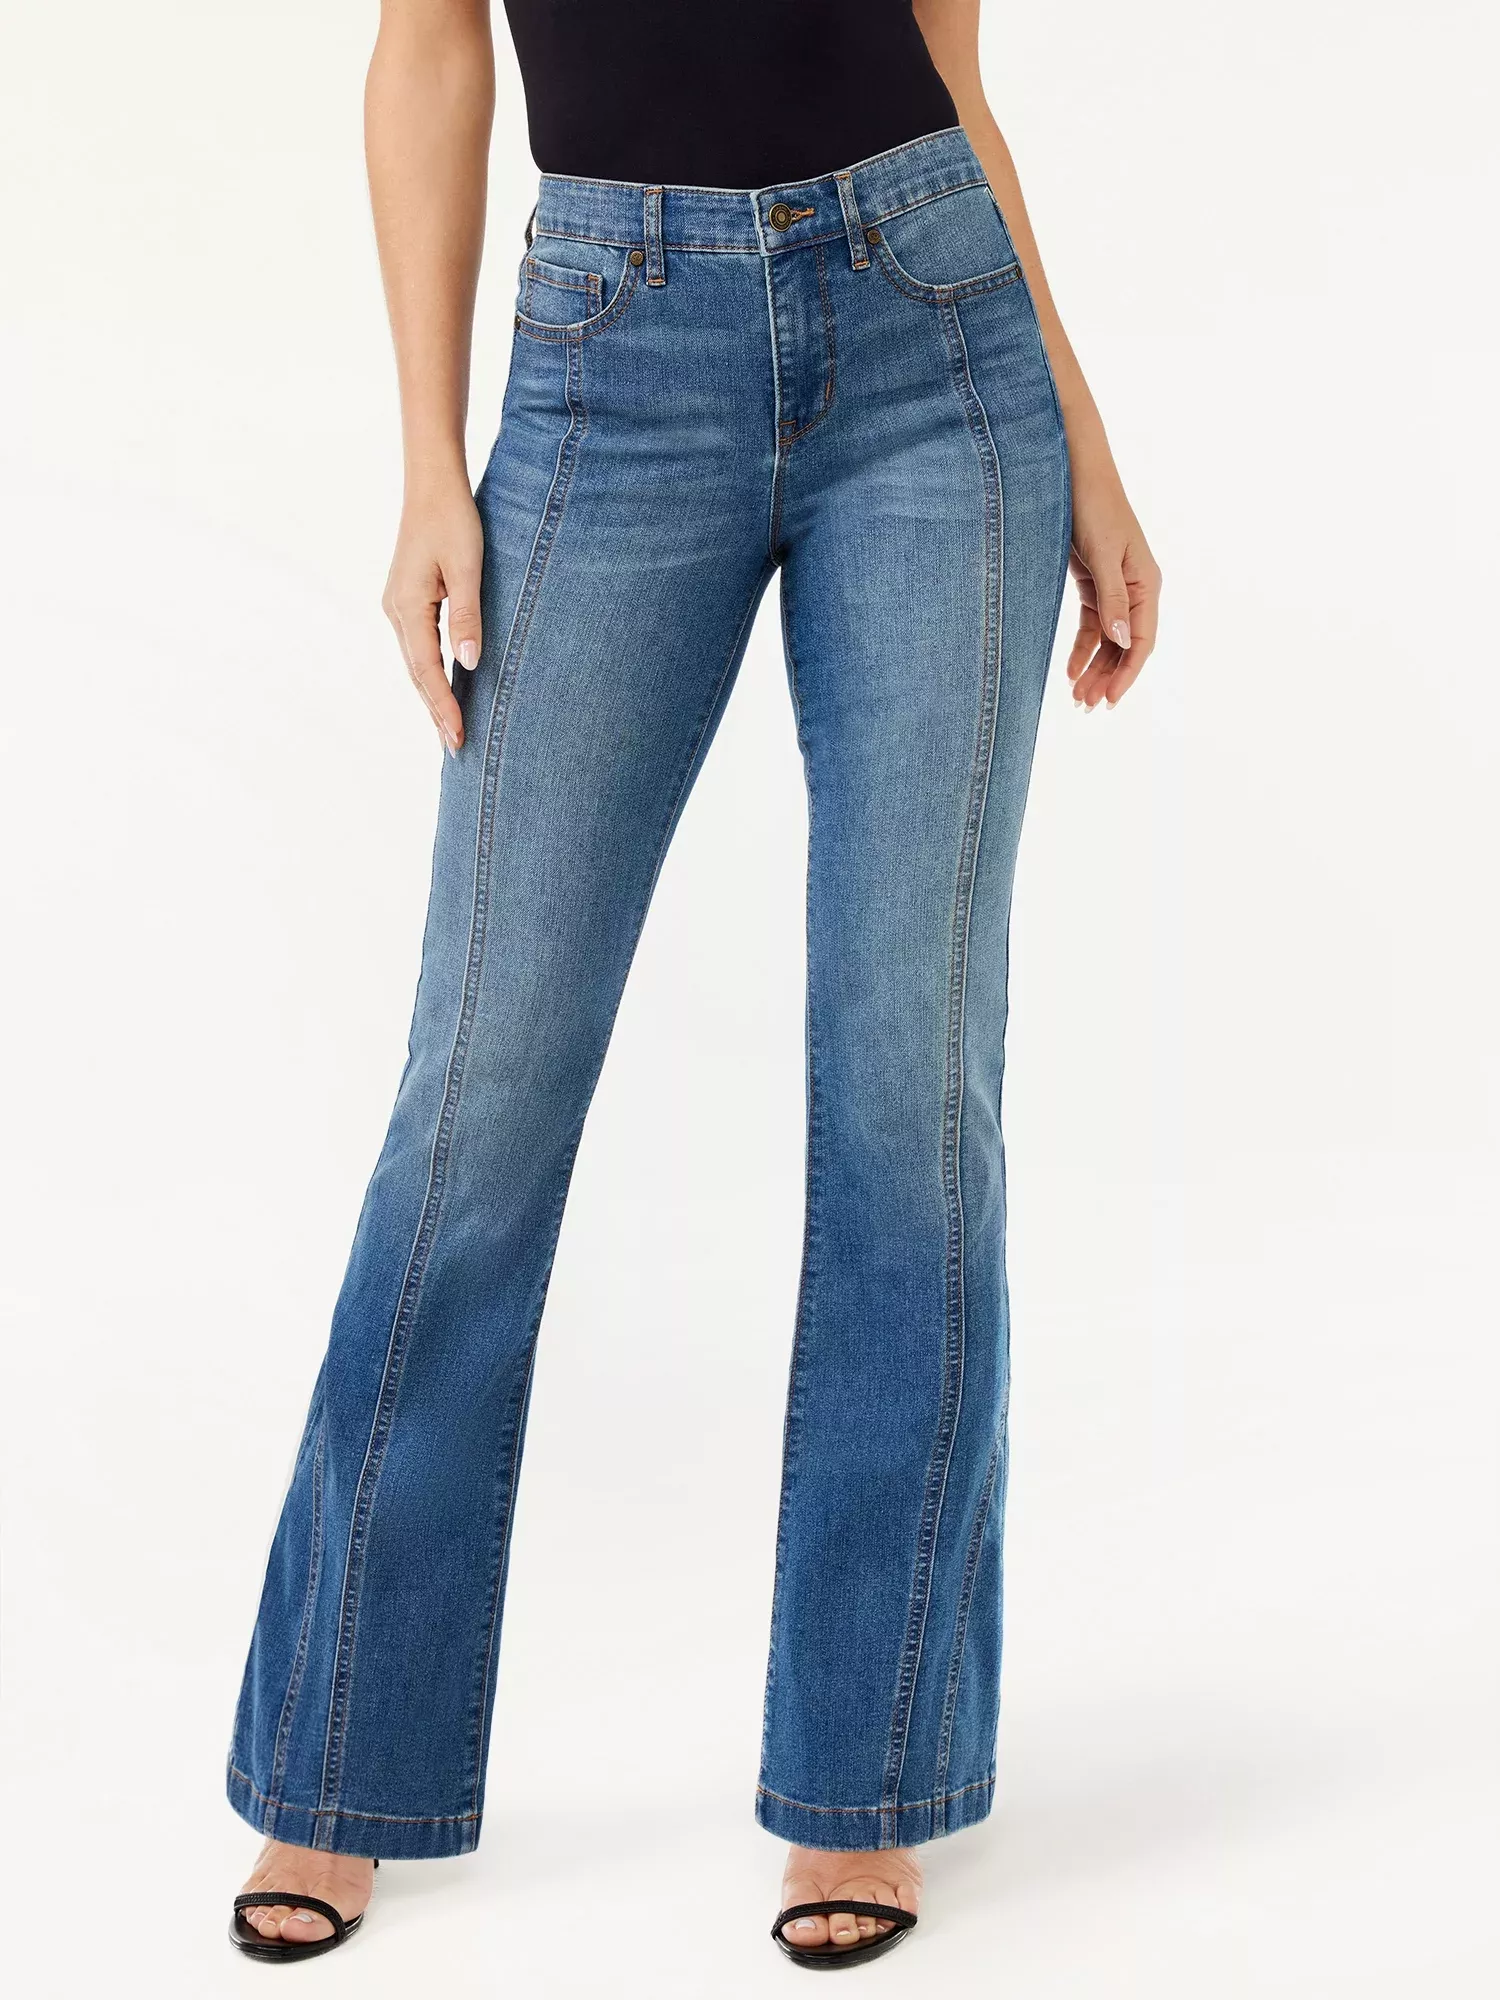 Sofia Vergara A Pocket Flare Jeans for Women